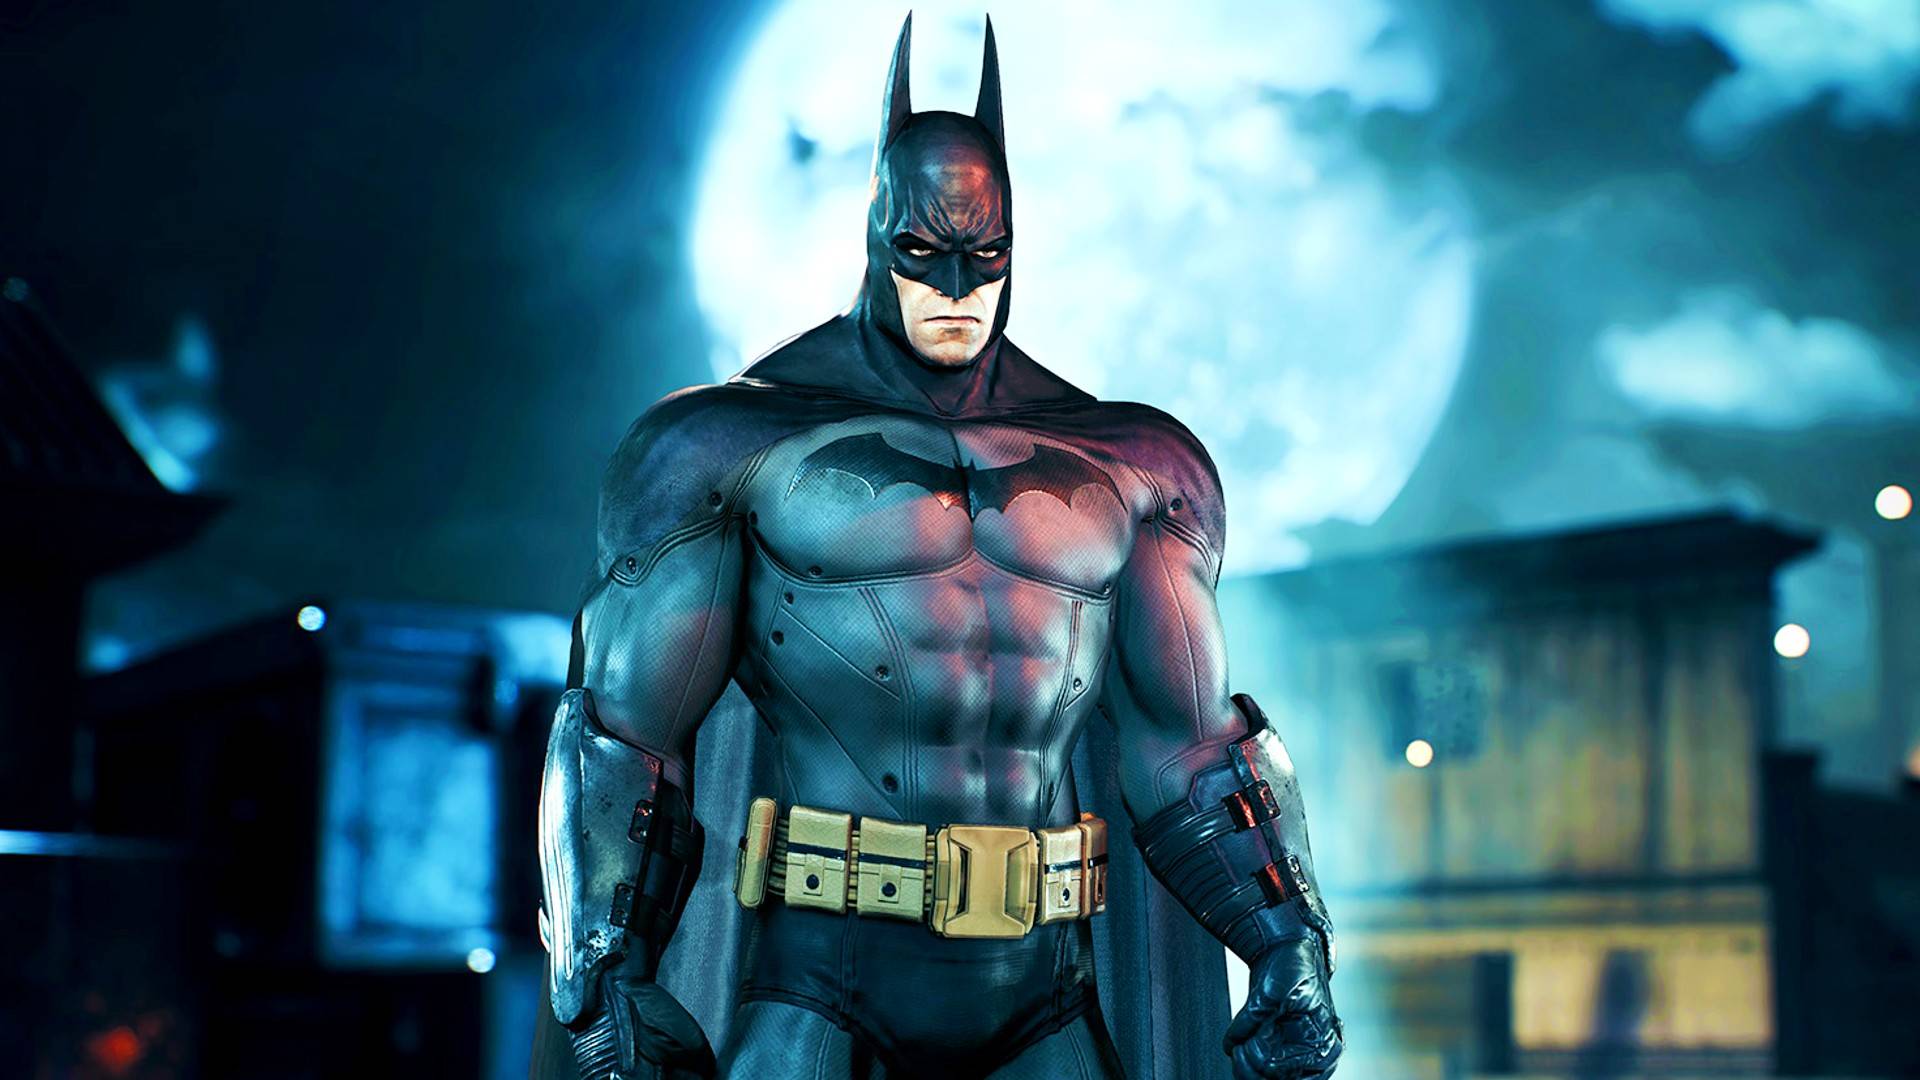 hacerte molestar tema amenazar Los mejores juegos de Batman para PC